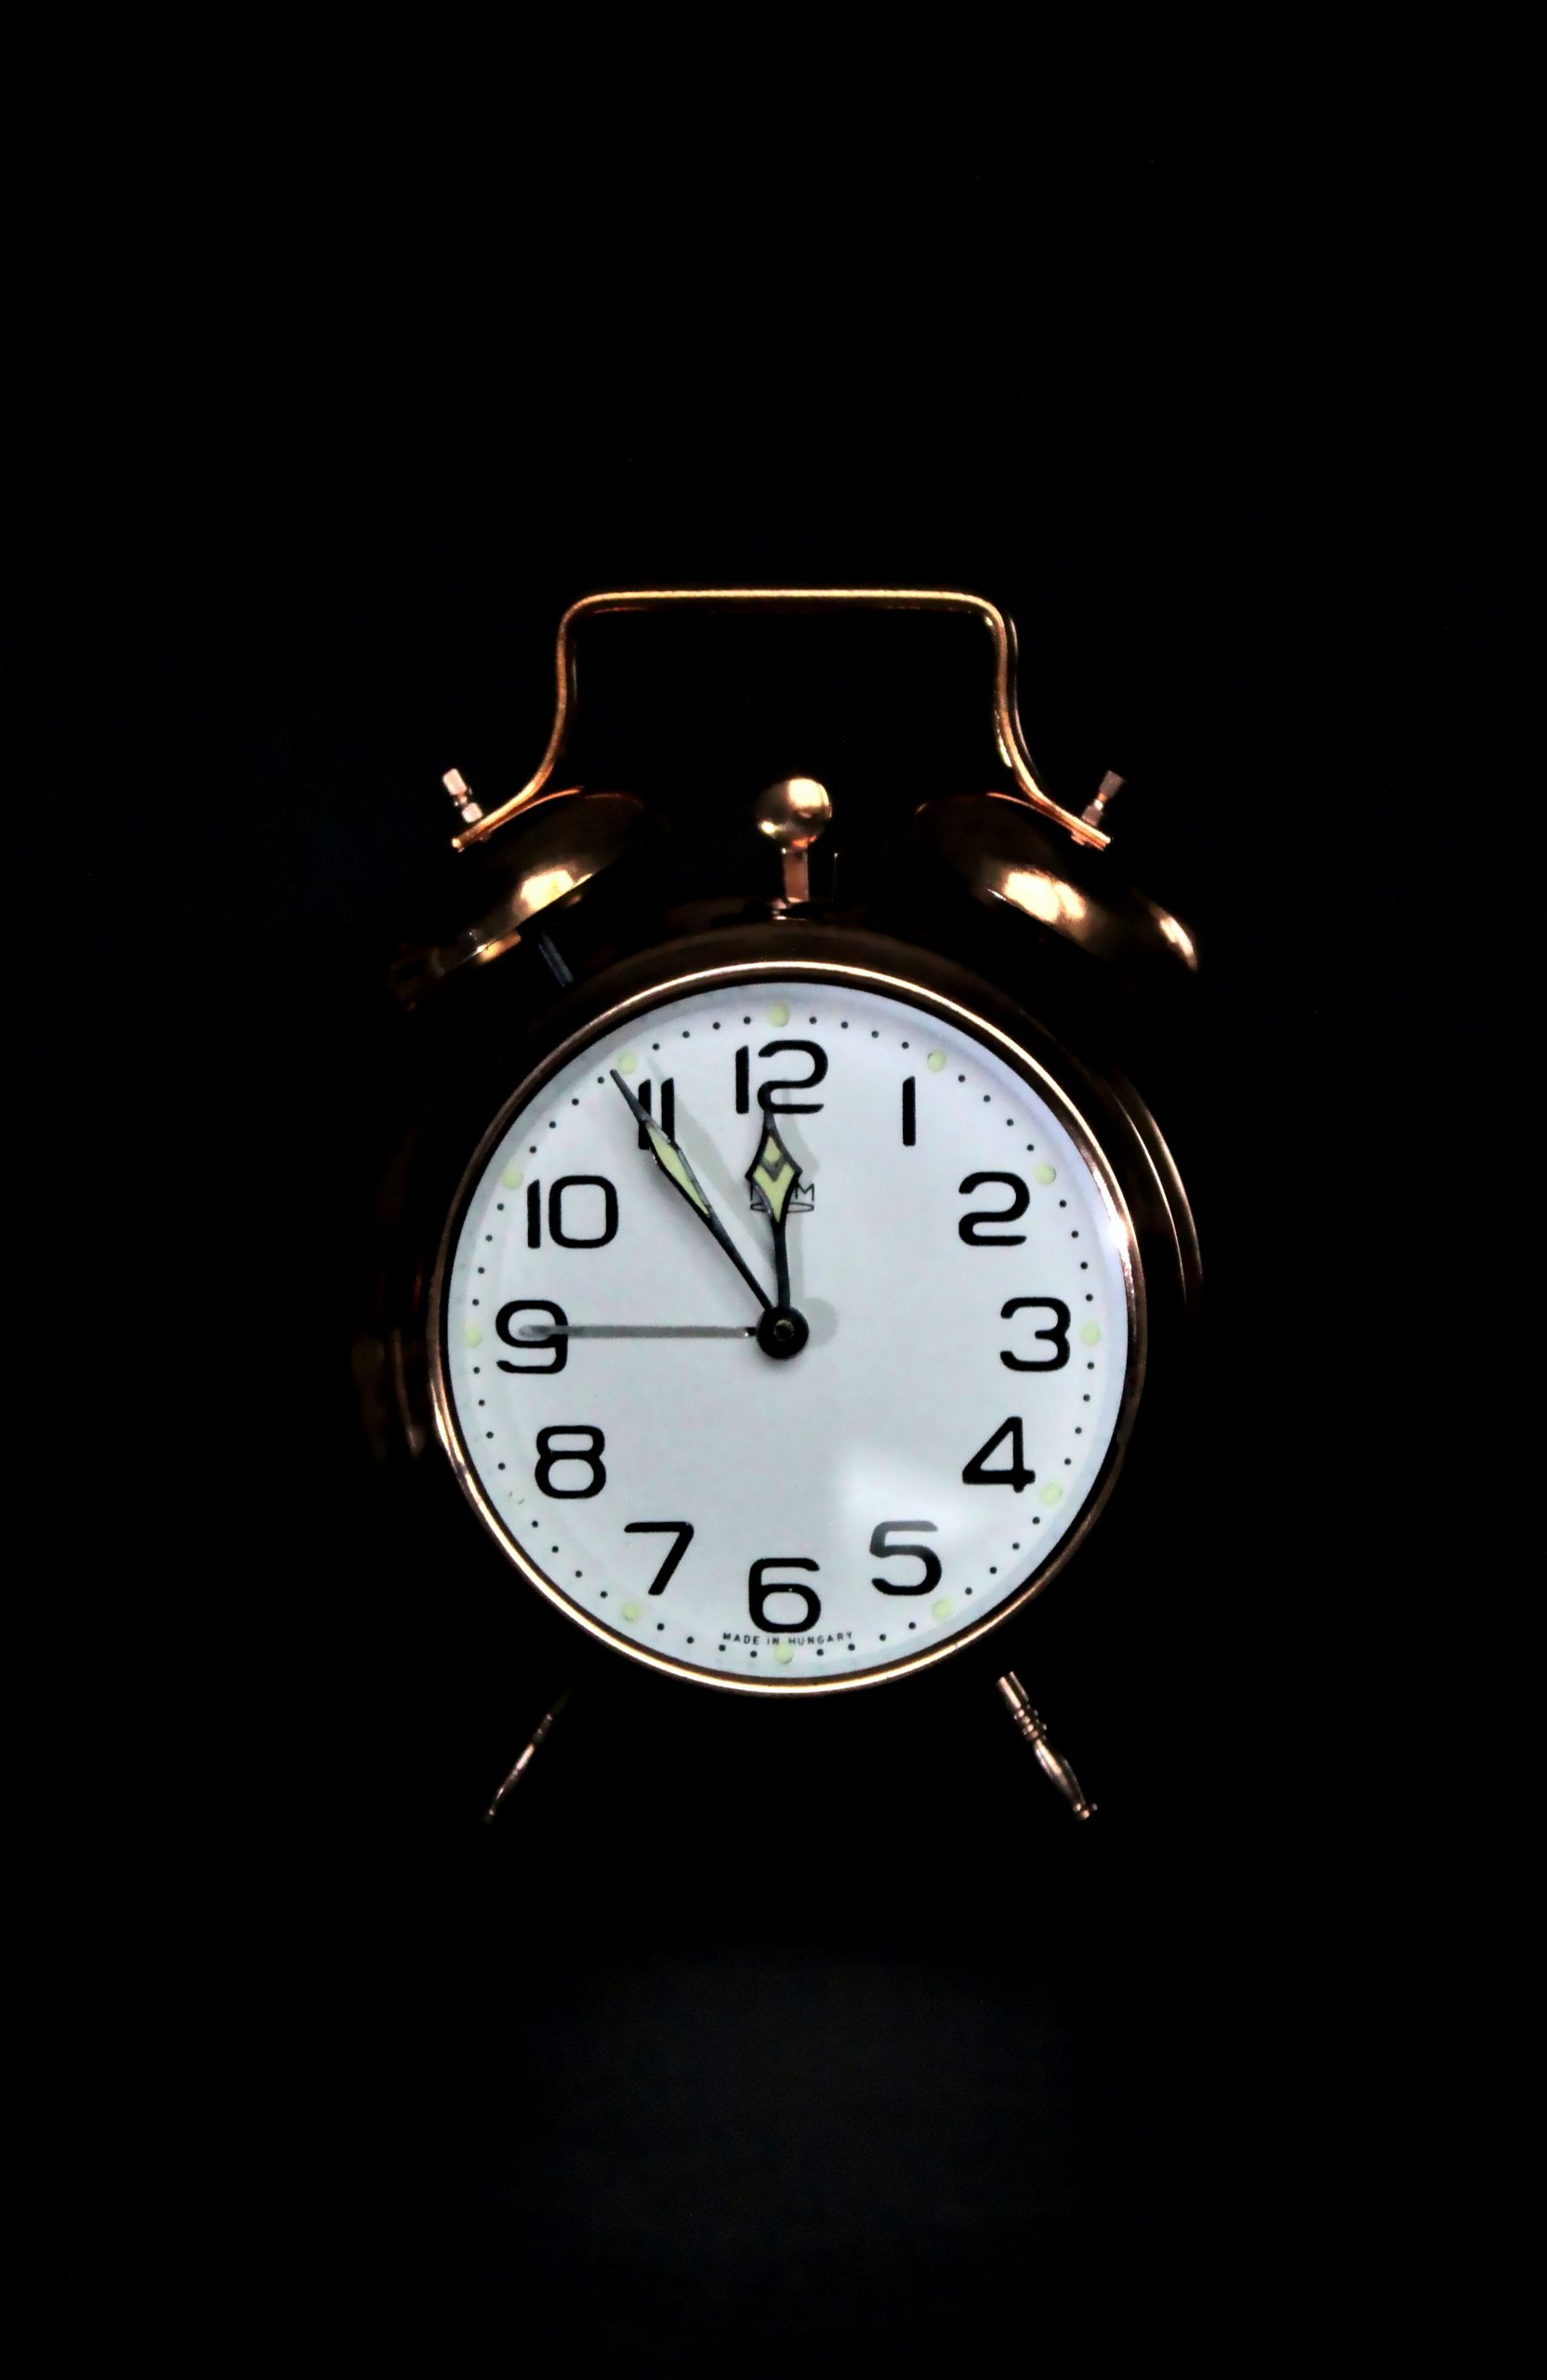 A bronze alarm clock